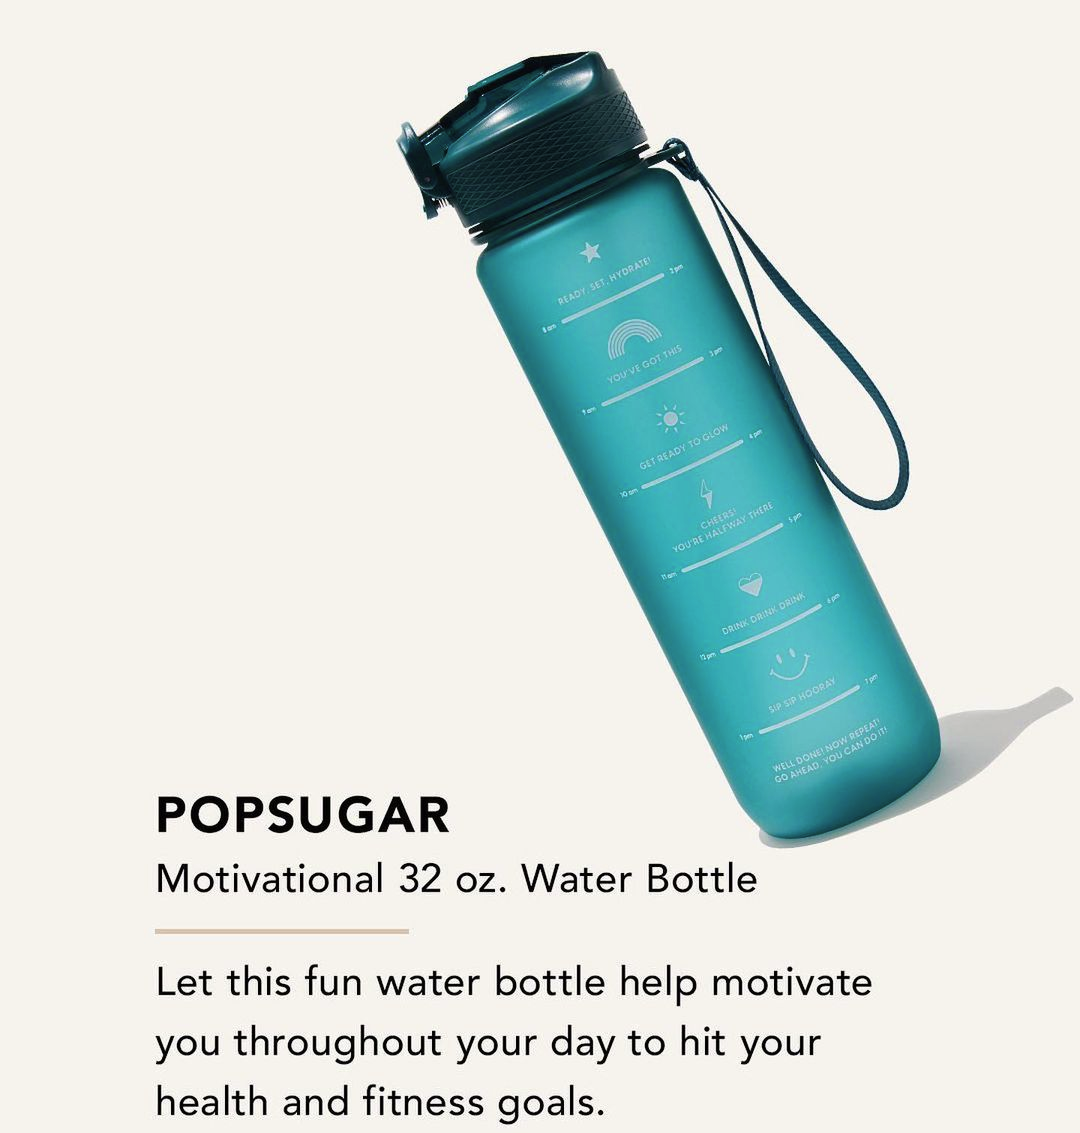 POPSUGAR Motivational 32 oz Water Bottle